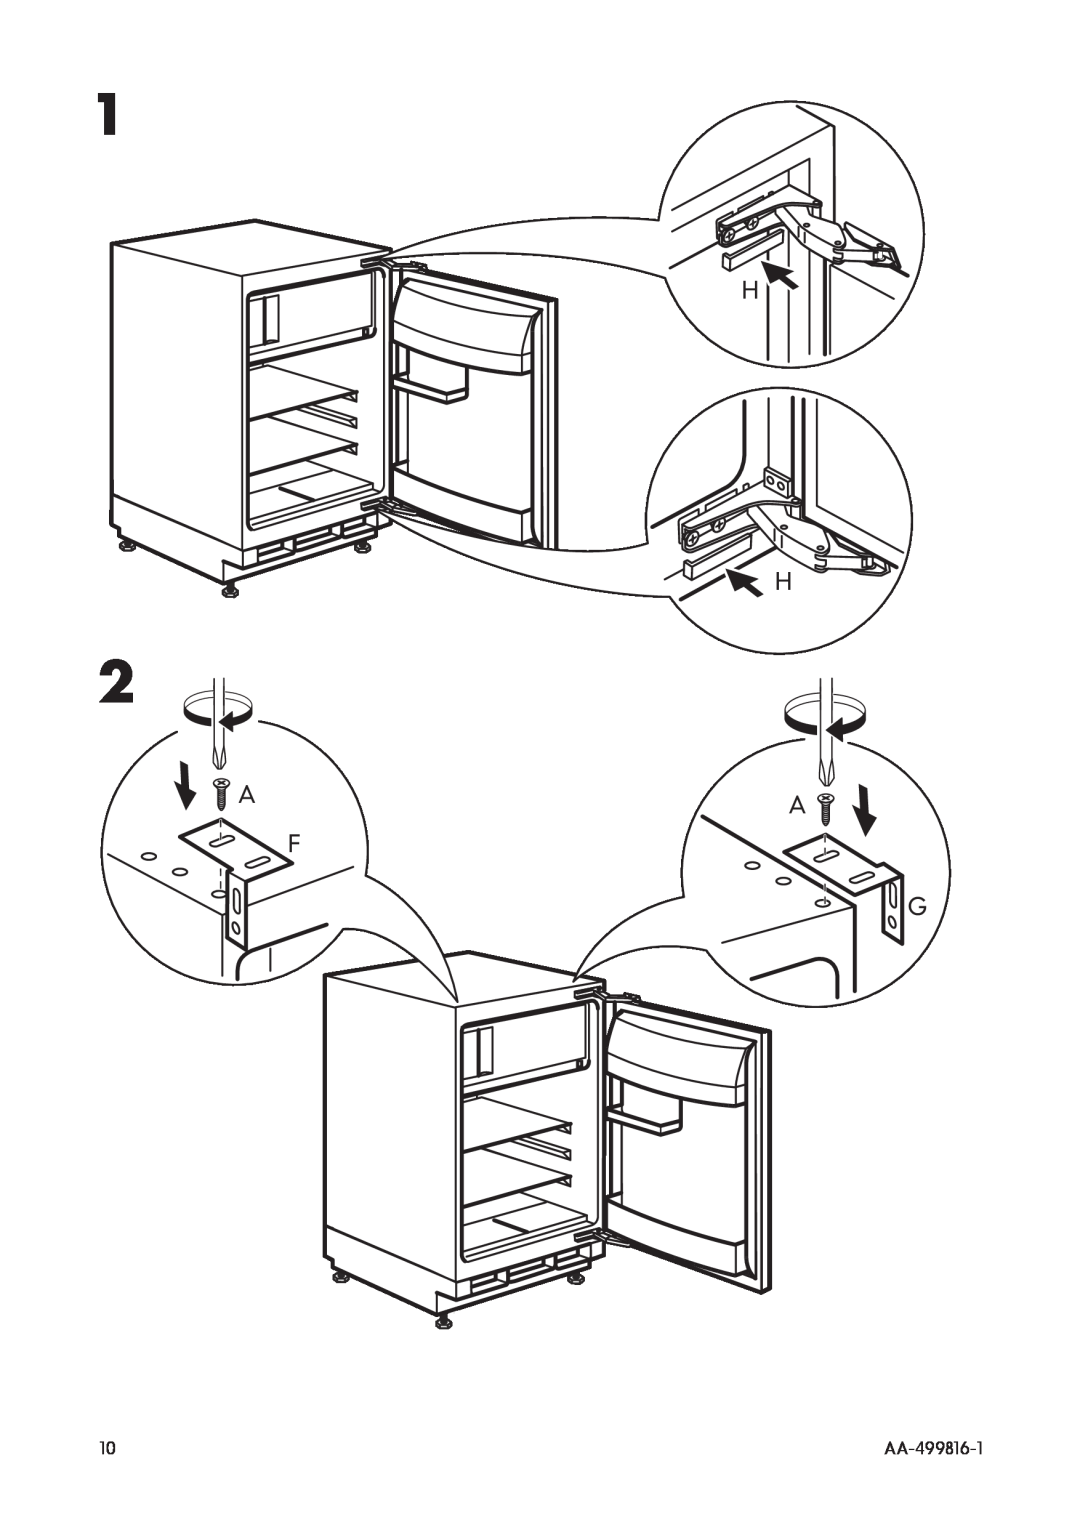 IKEA SC100/17 manual AA-499816-1 